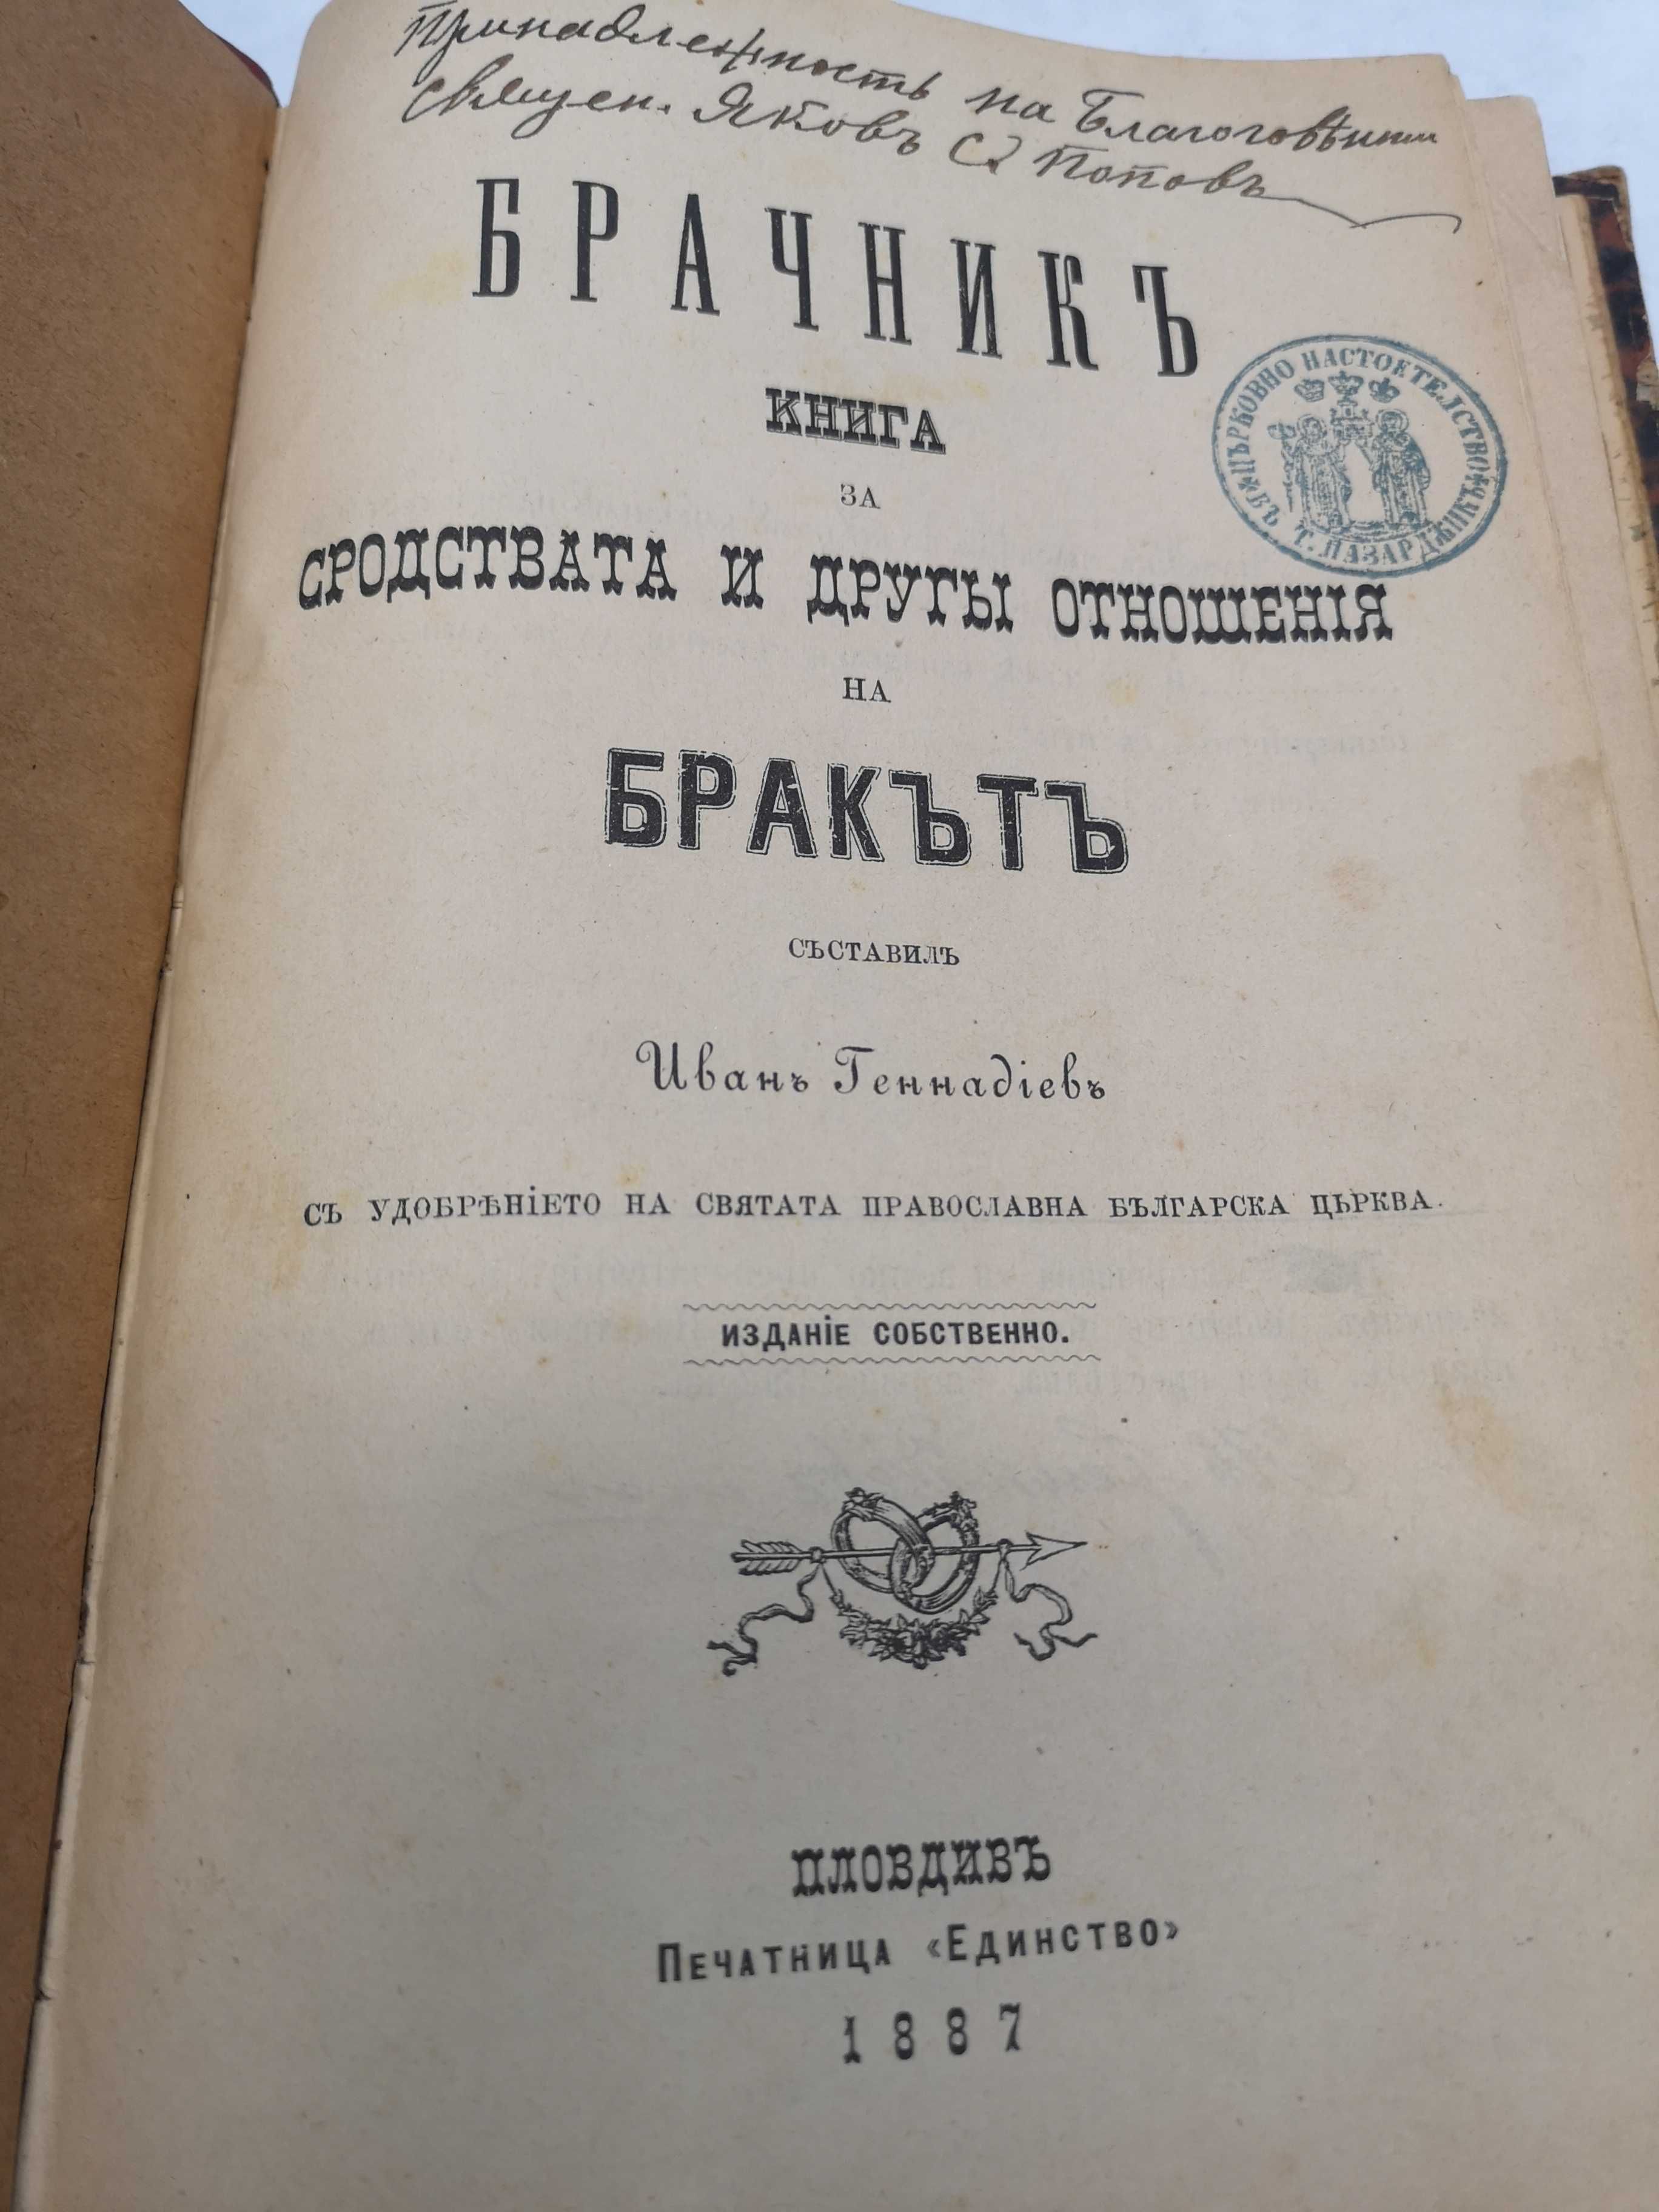 RRR.Българска книга 1887 година,в 40 егземпляра/БРАЧНИКЪ/